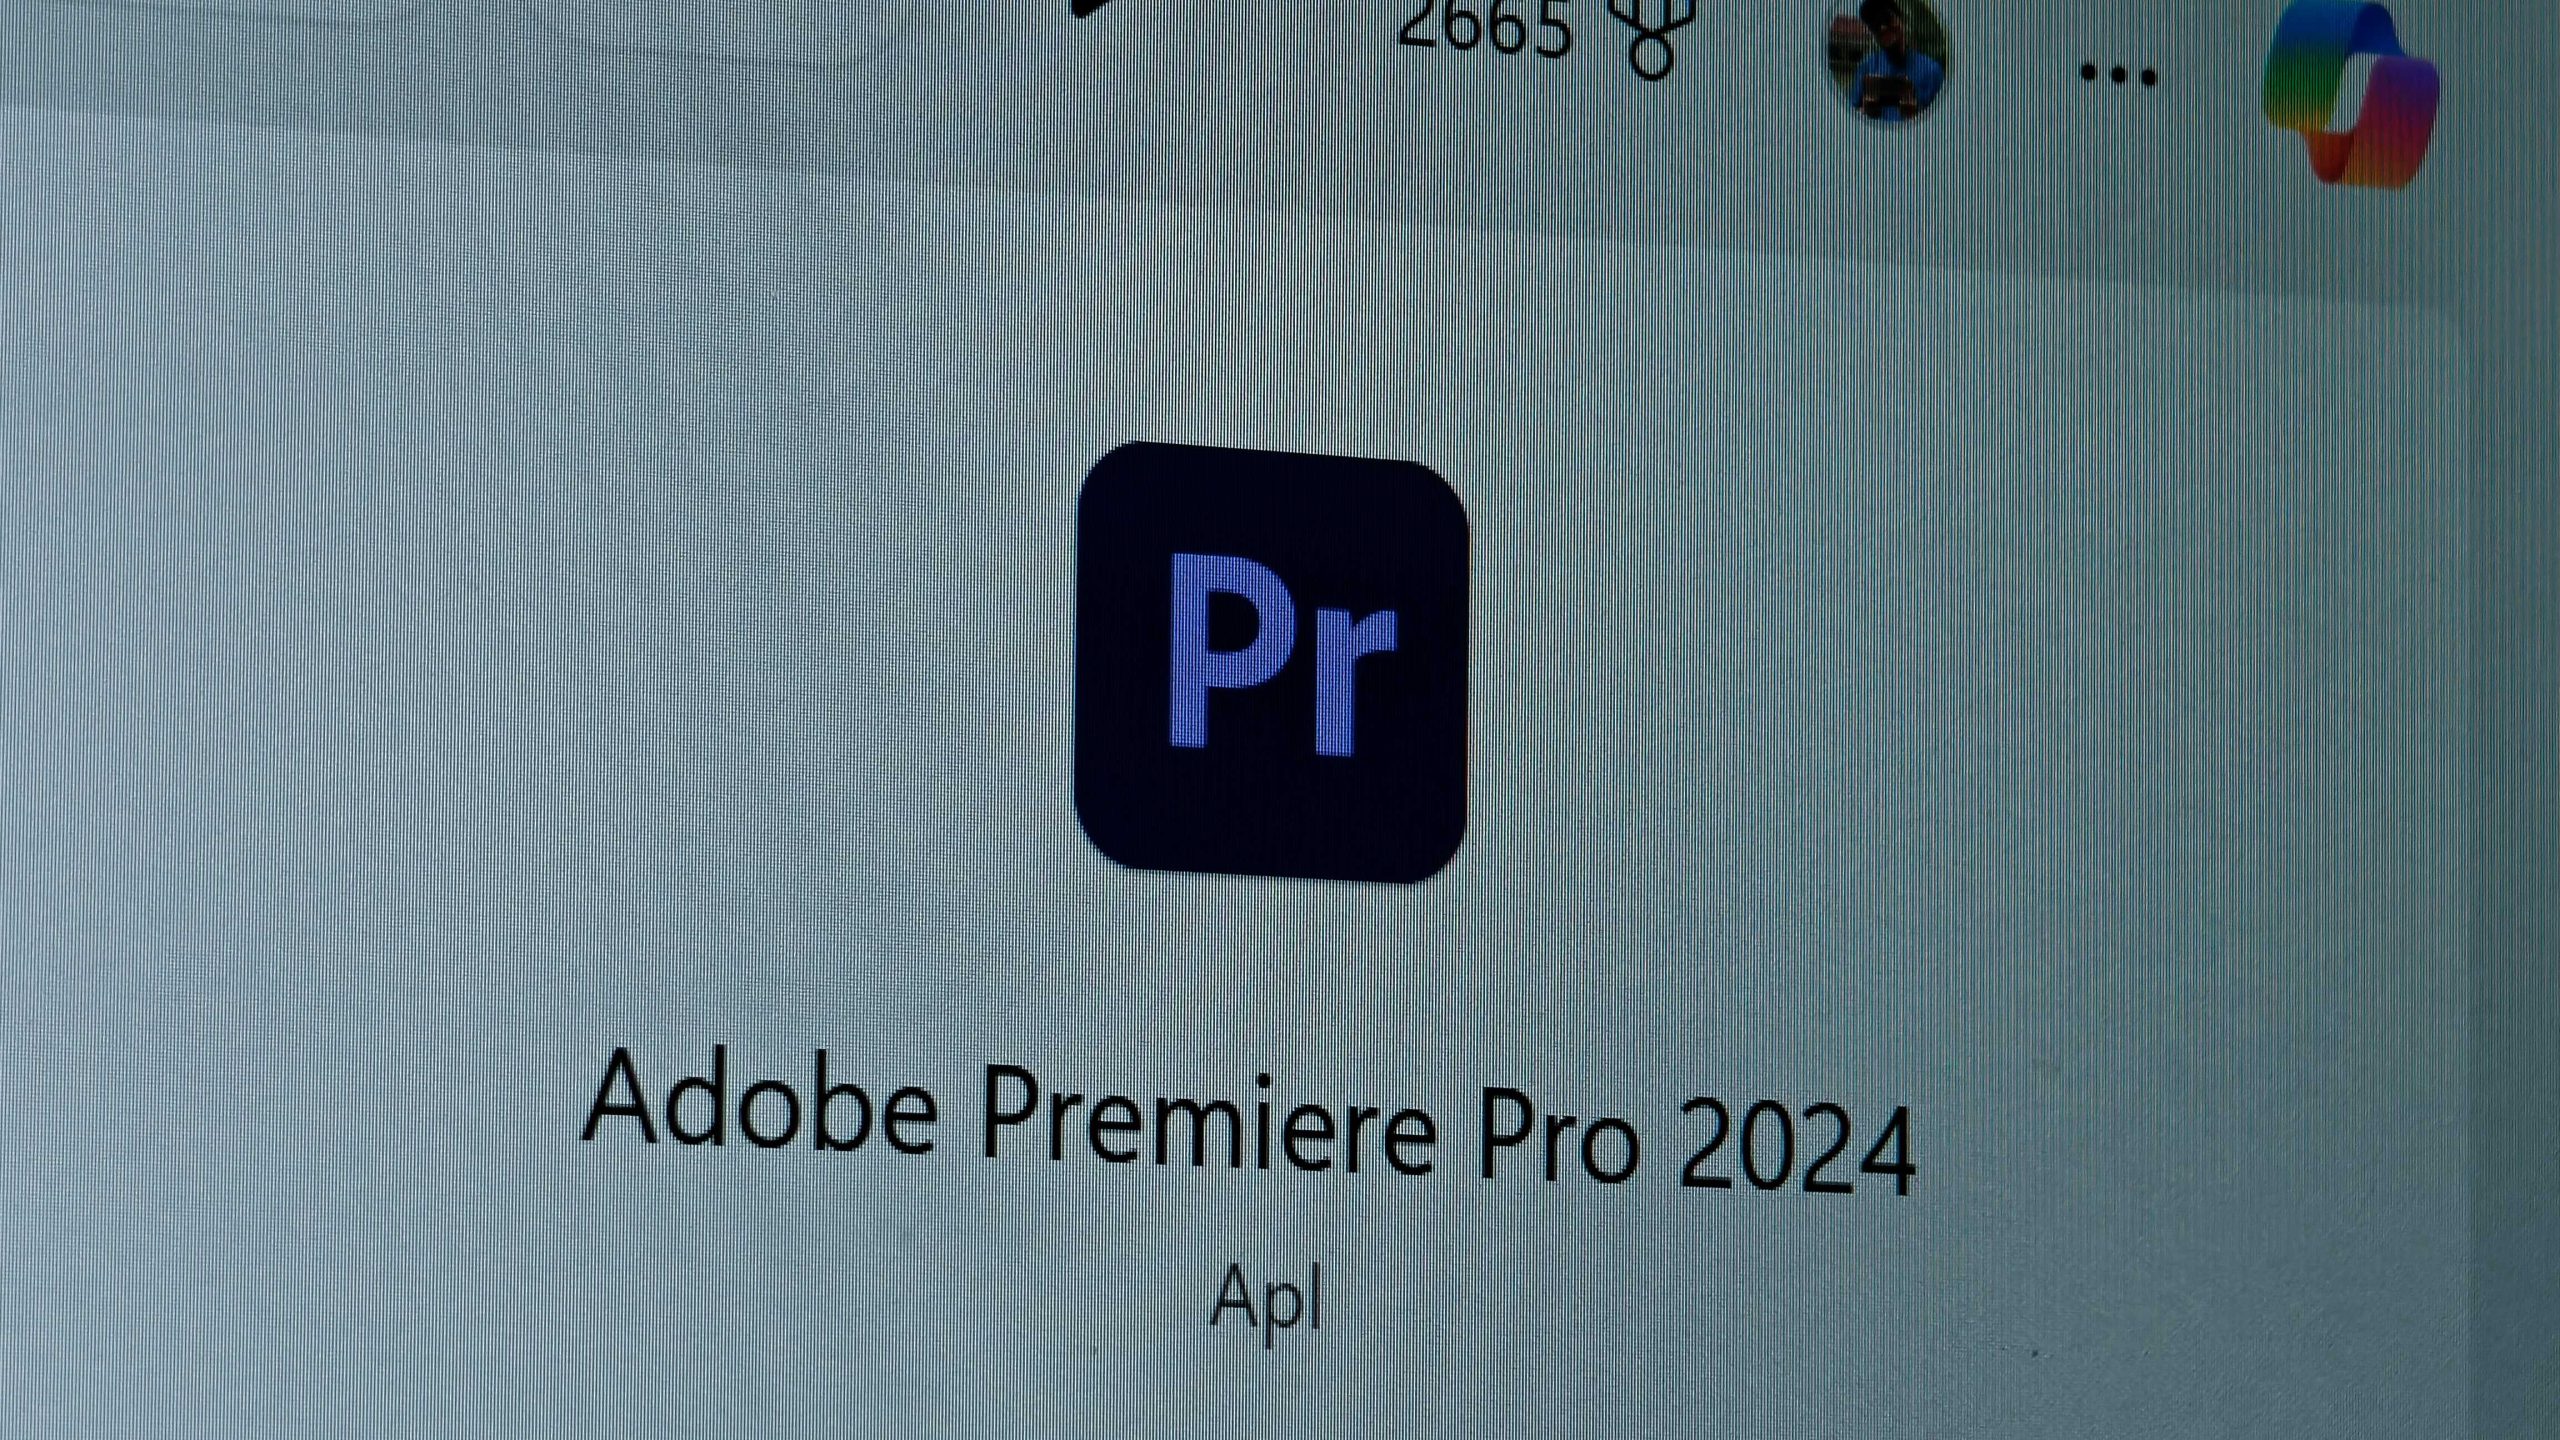 Adobe Premiere Pro Akan Menerima Ciri Menjana Video Dengan AI